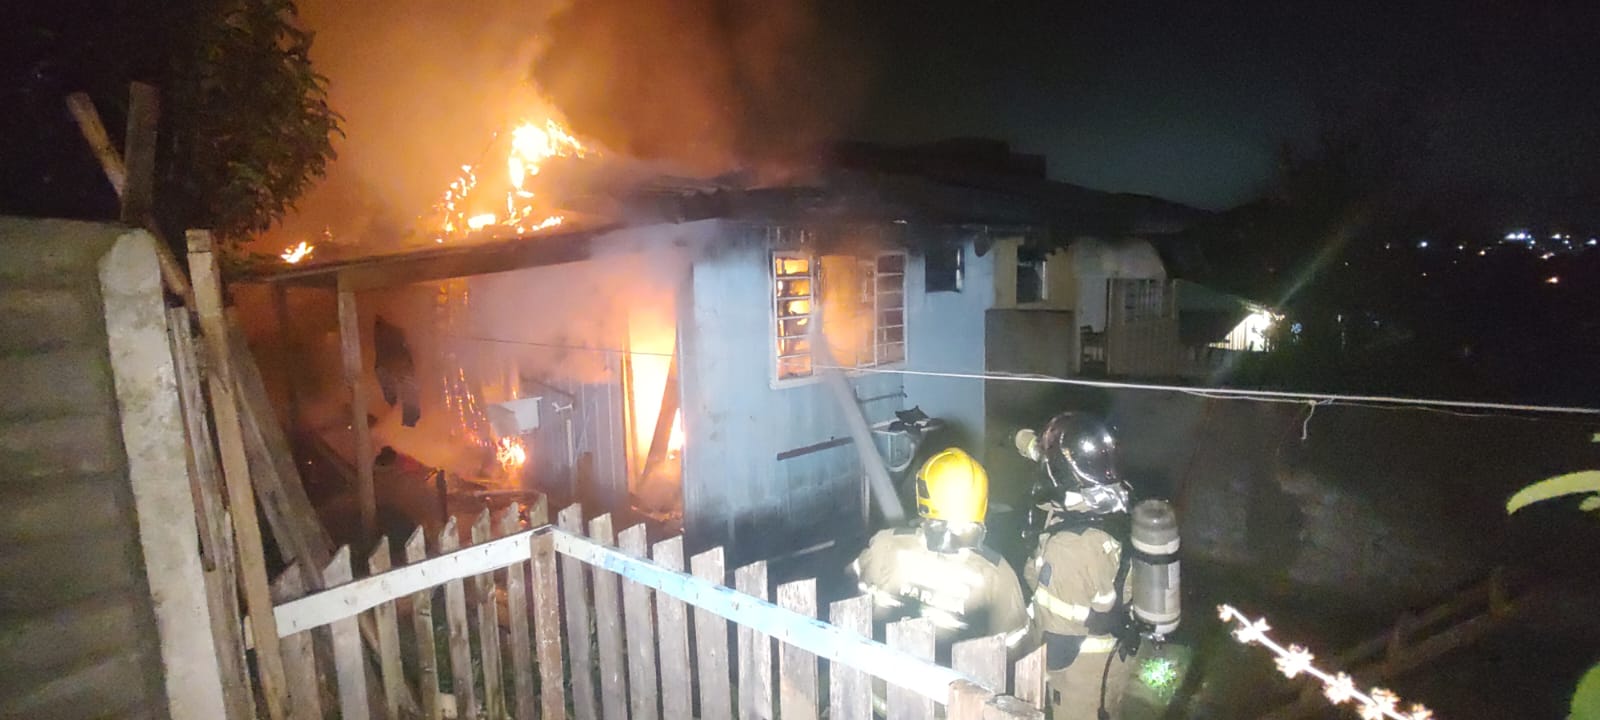 Mulher ateia fogo na própria casa após brigar com o marido em Ponta Grossa